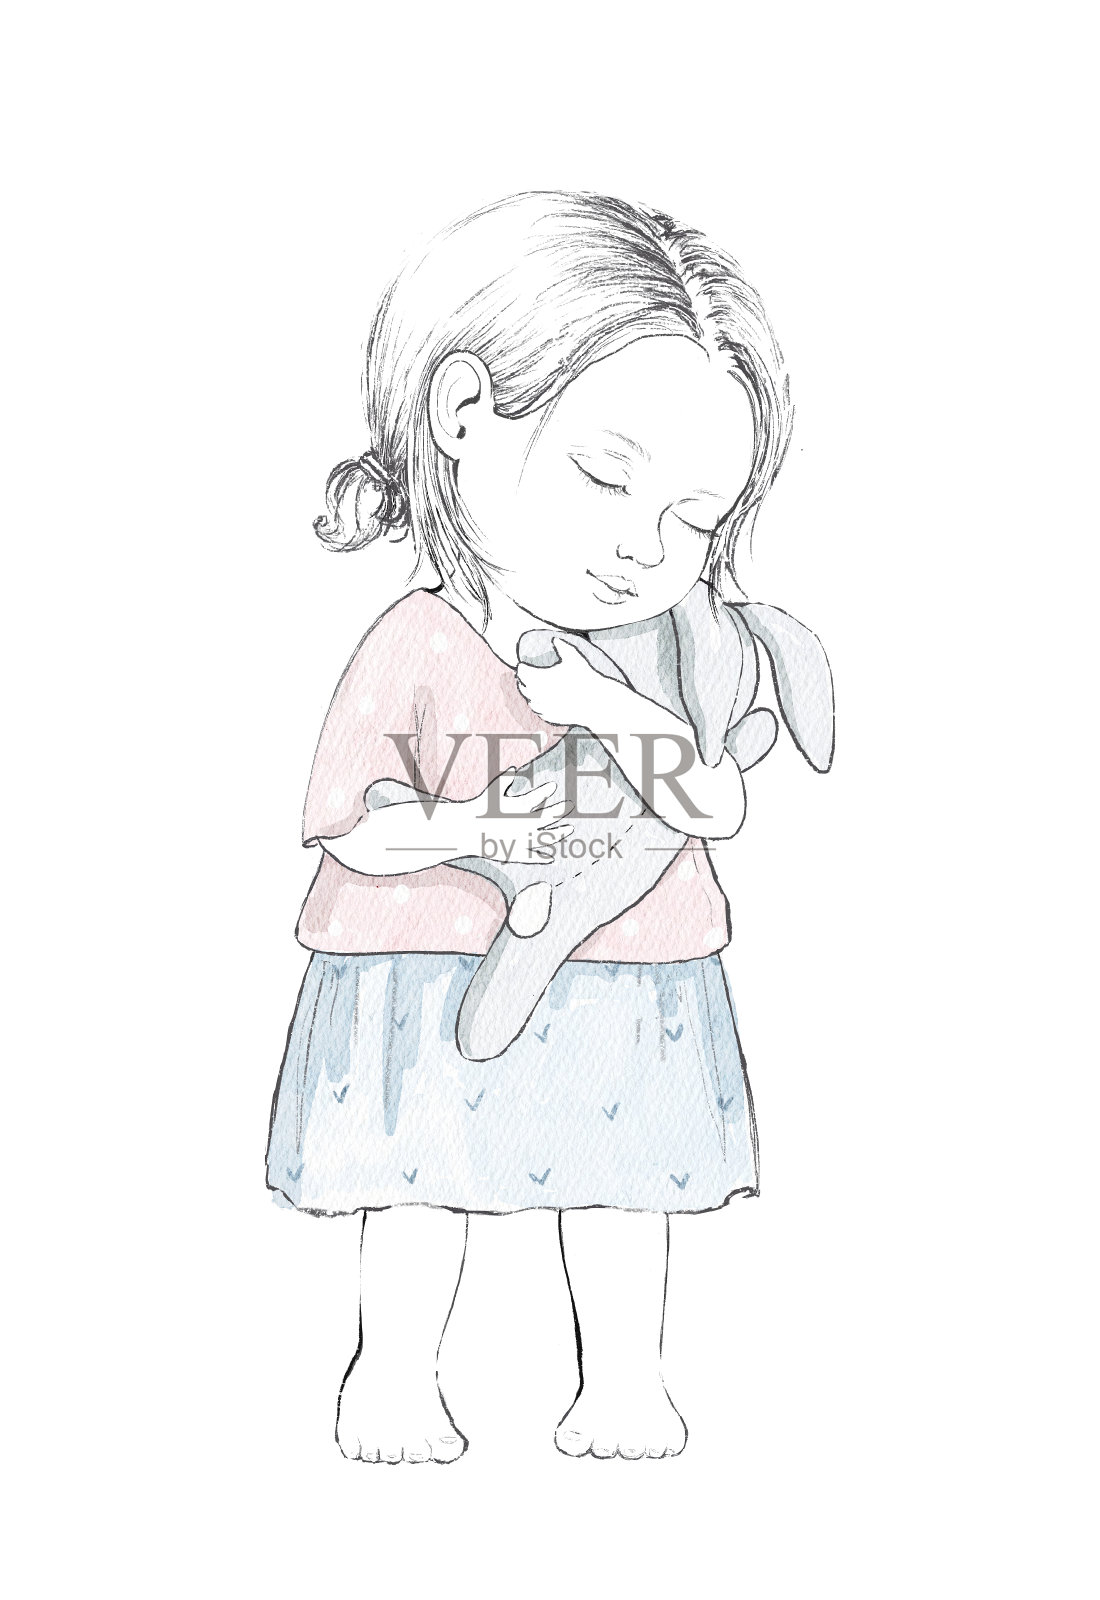 水彩素描与老式卡通小女孩与玩具兔子插画图片素材